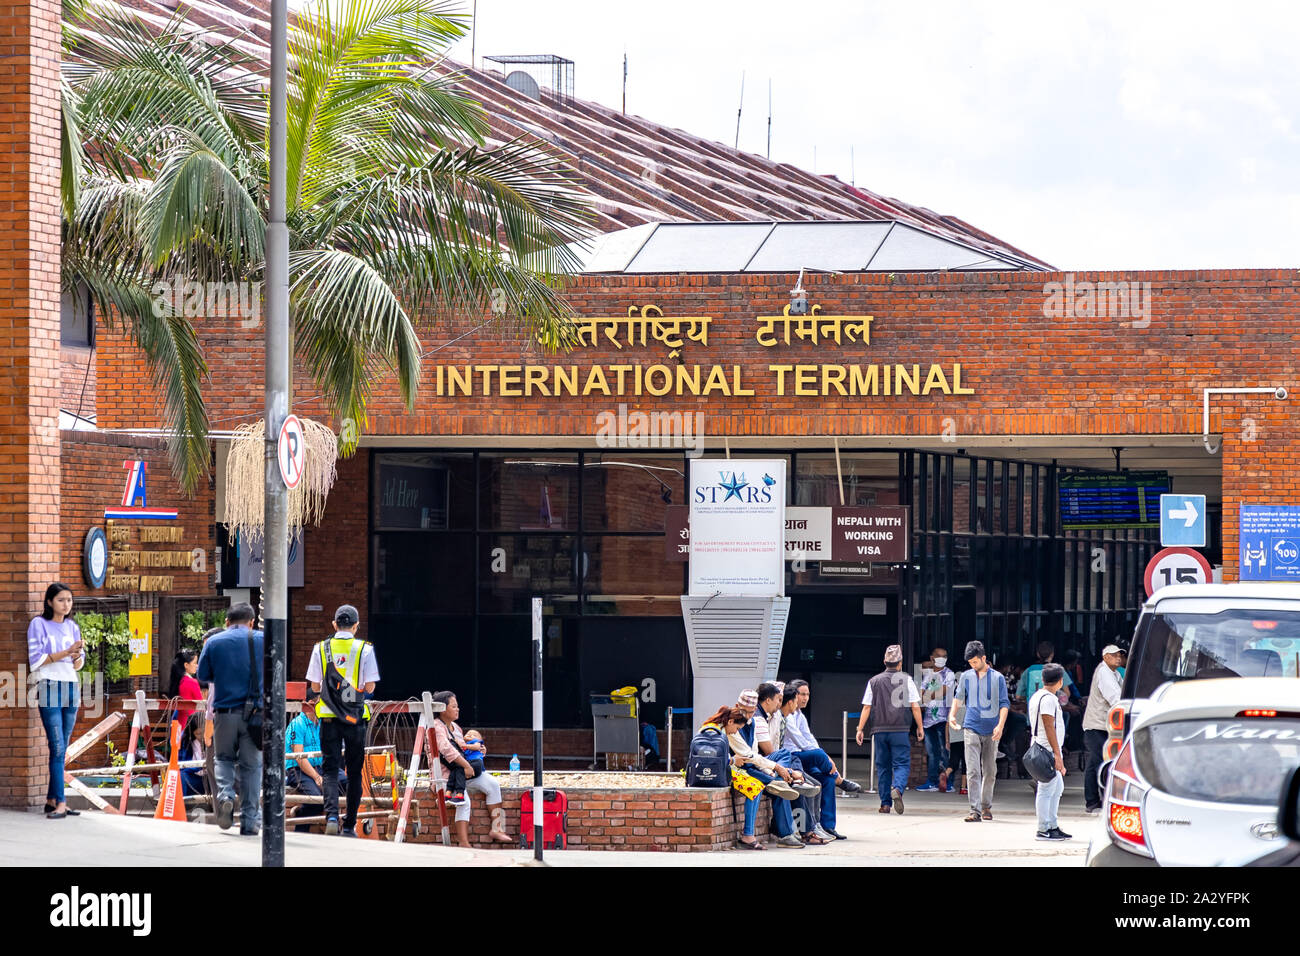 Tribhuvan International Airport in Kathmandu, Nepal. Stock Photo